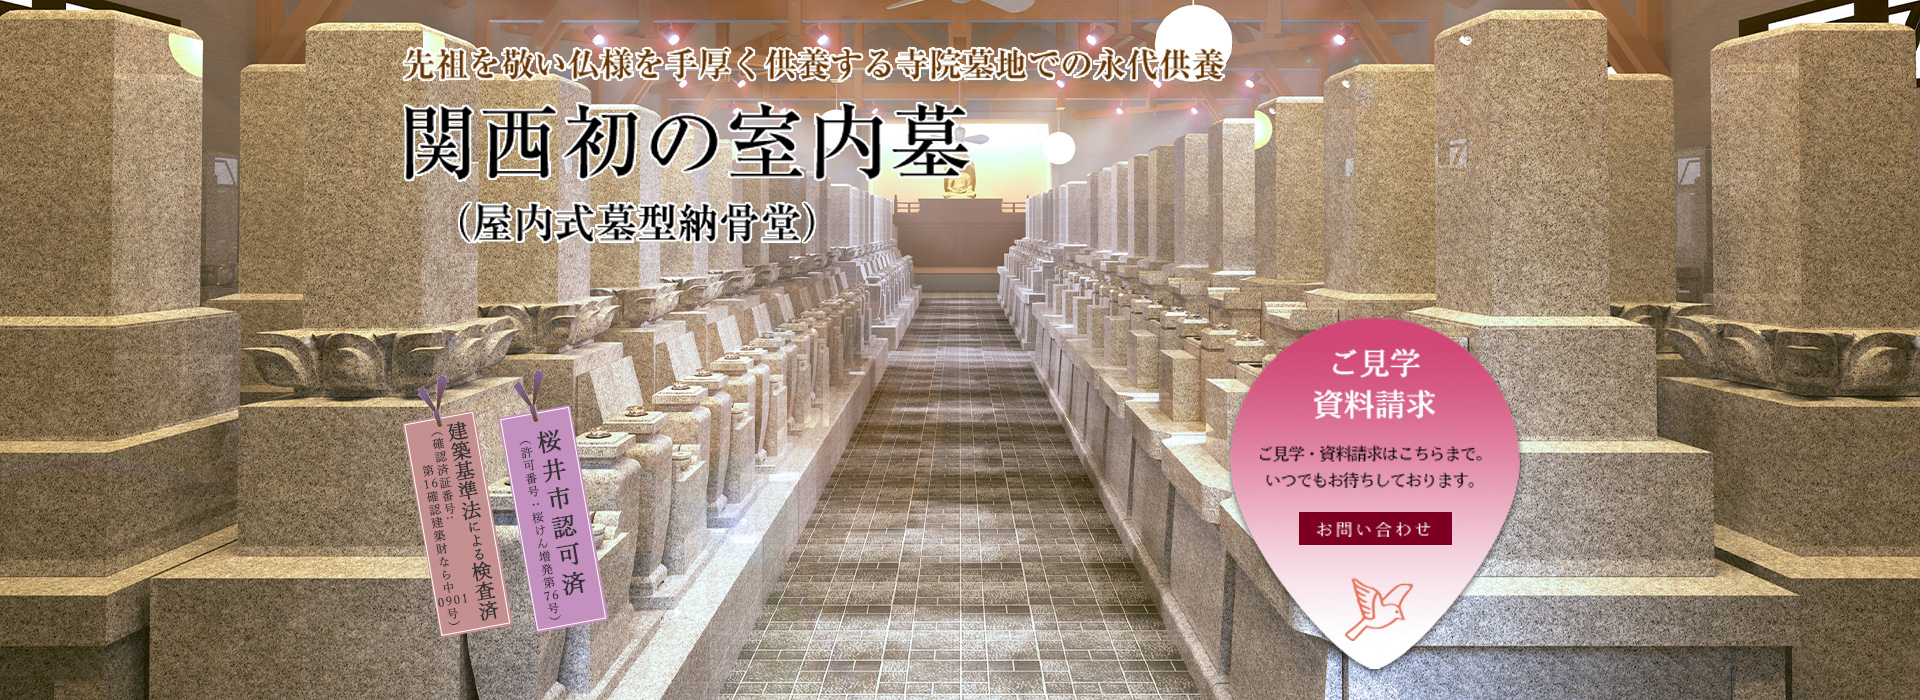 先祖を敬い仏様を手厚く供養する寺院墓地での永代供養。関西初の室内墓（屋内式墓型納骨堂）